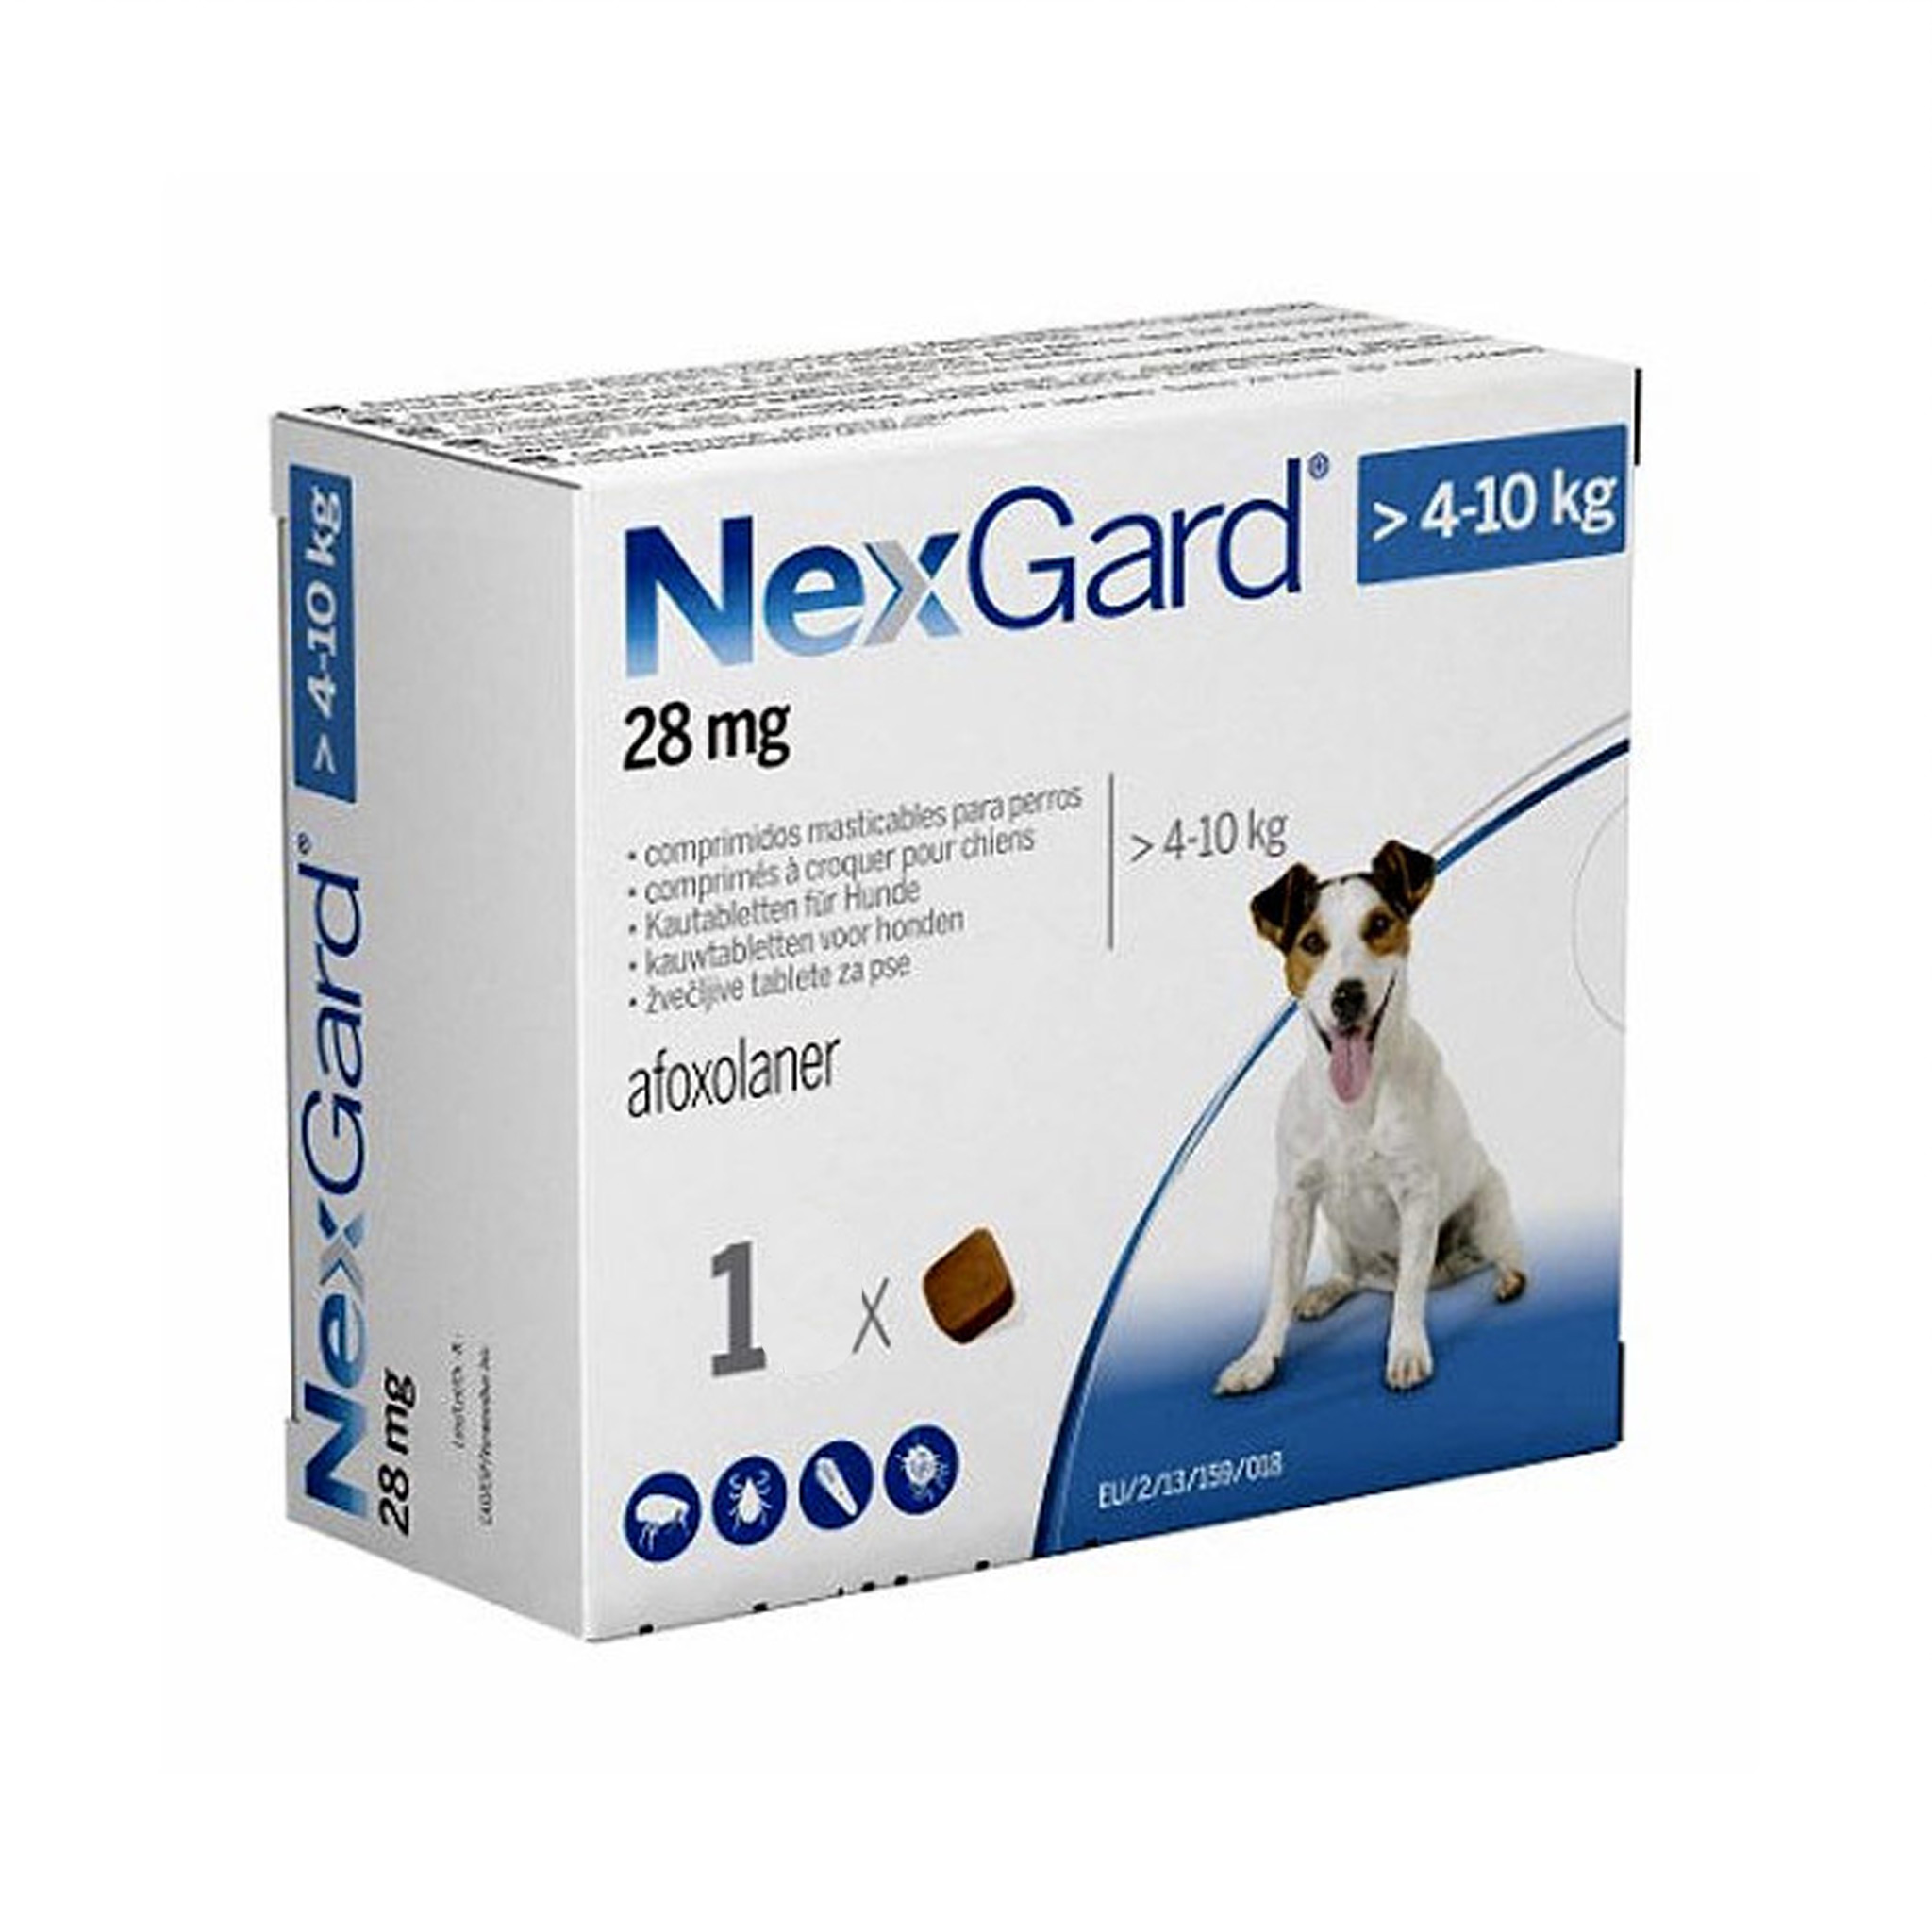 Нексгард для собак 2 4 кг. NEXGARD M. NEXGARD Spectra для собак 3 компонентная 1 большая и 2 маленькие. НЕКСГАРД для кошек. NEXGARD Spectra funciona Италия.